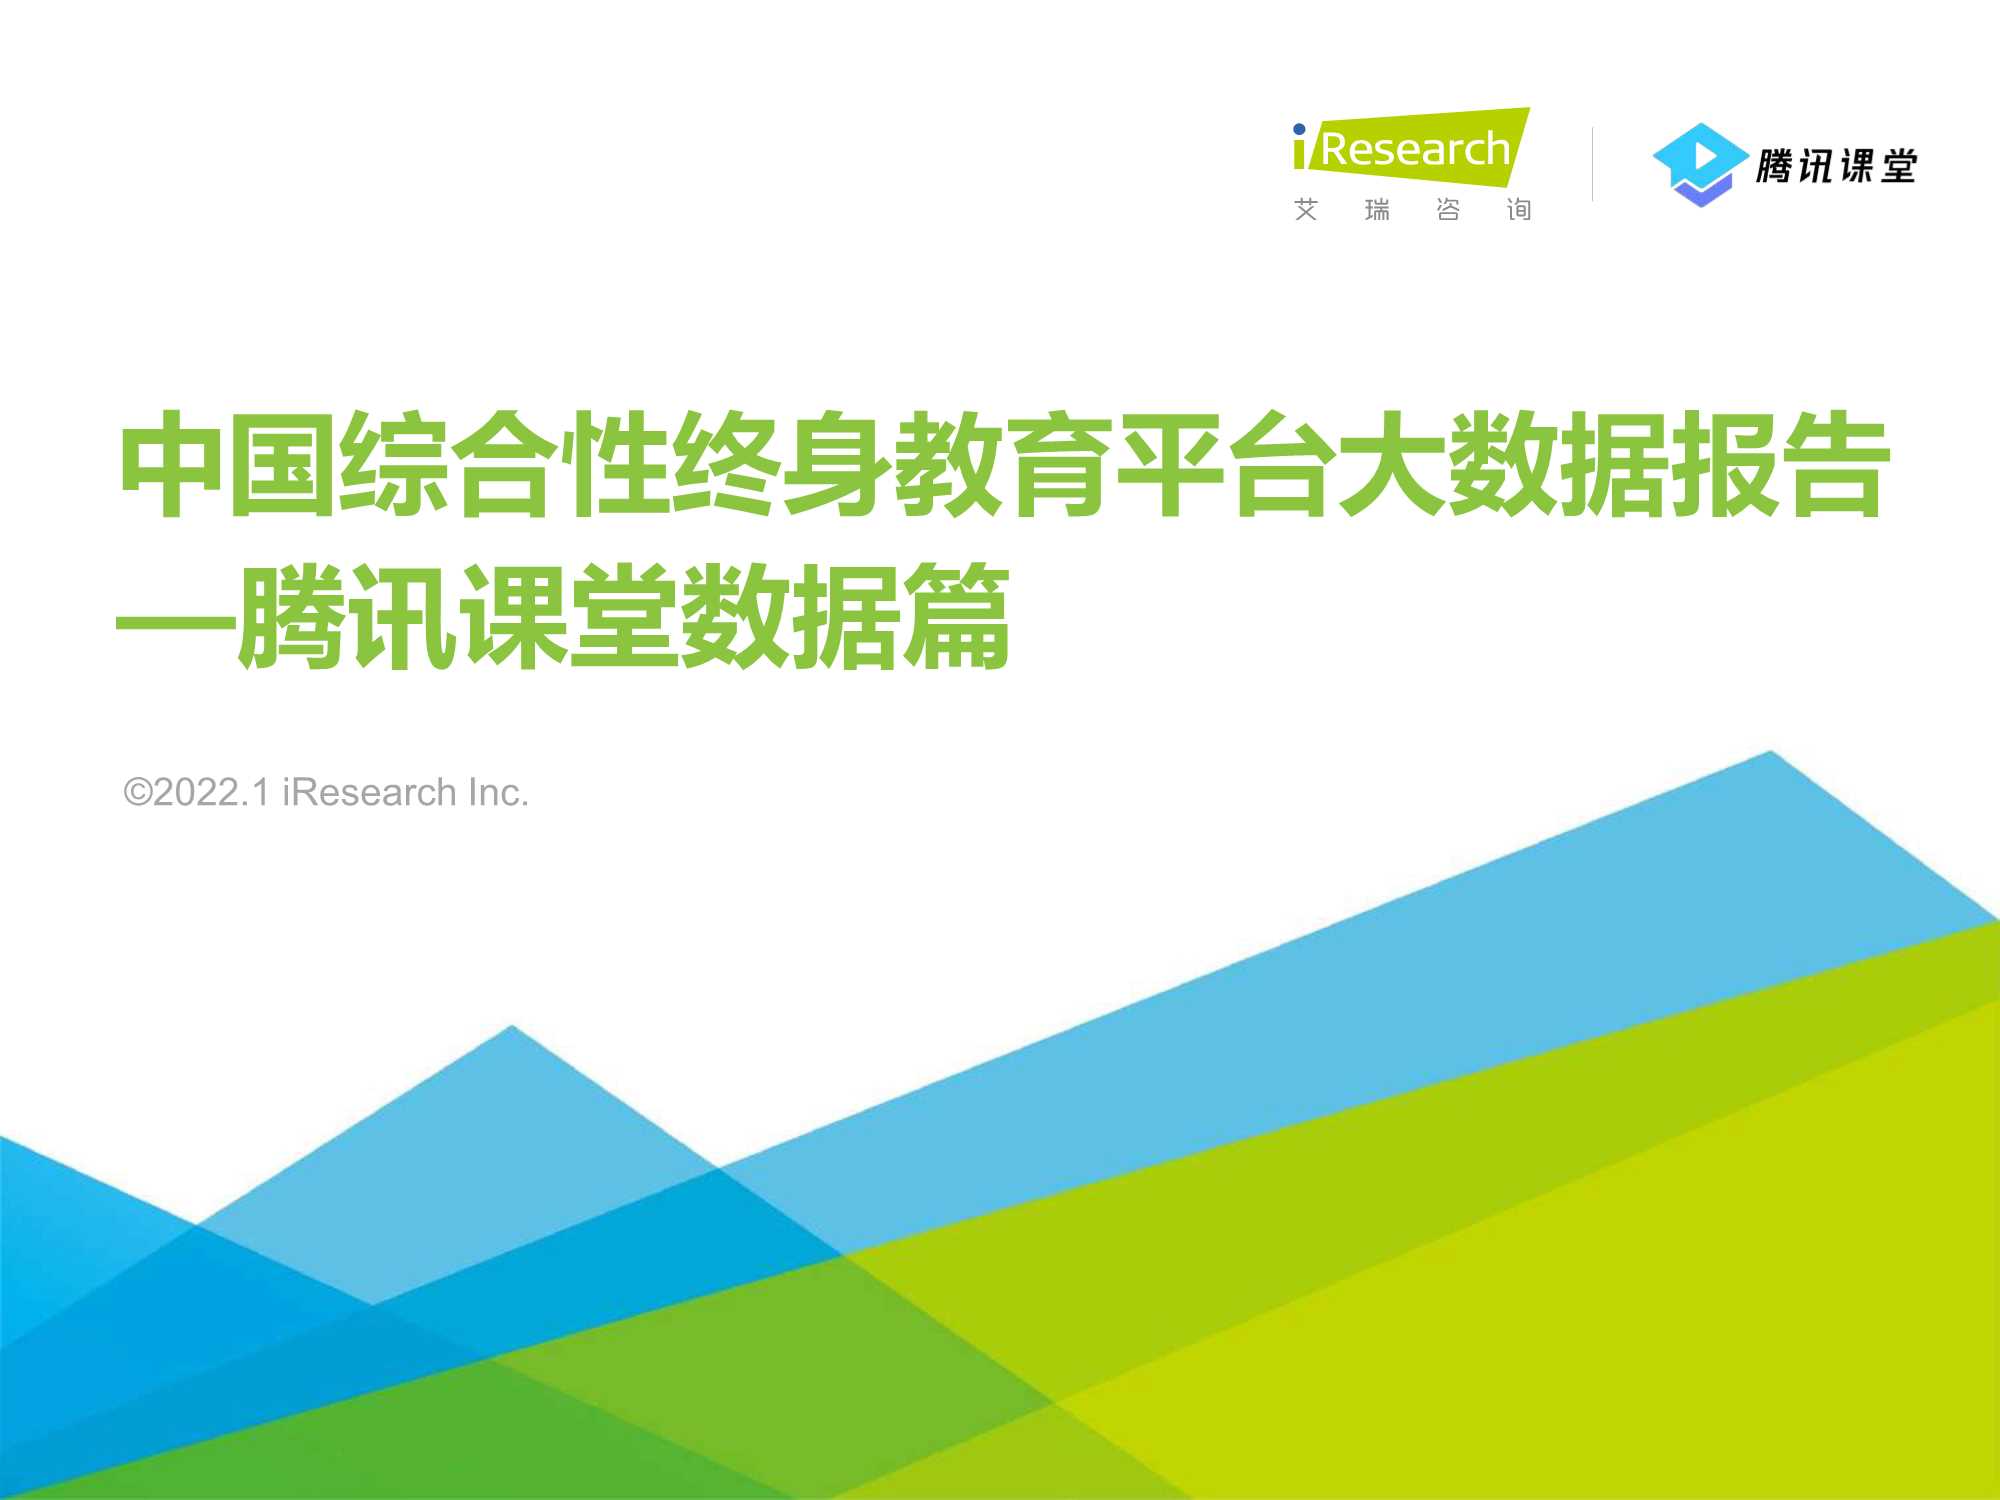 艾瑞咨询-2022年中国综合性终身教育平台大数据报告 -腾讯课堂数据篇-2022.01-36页